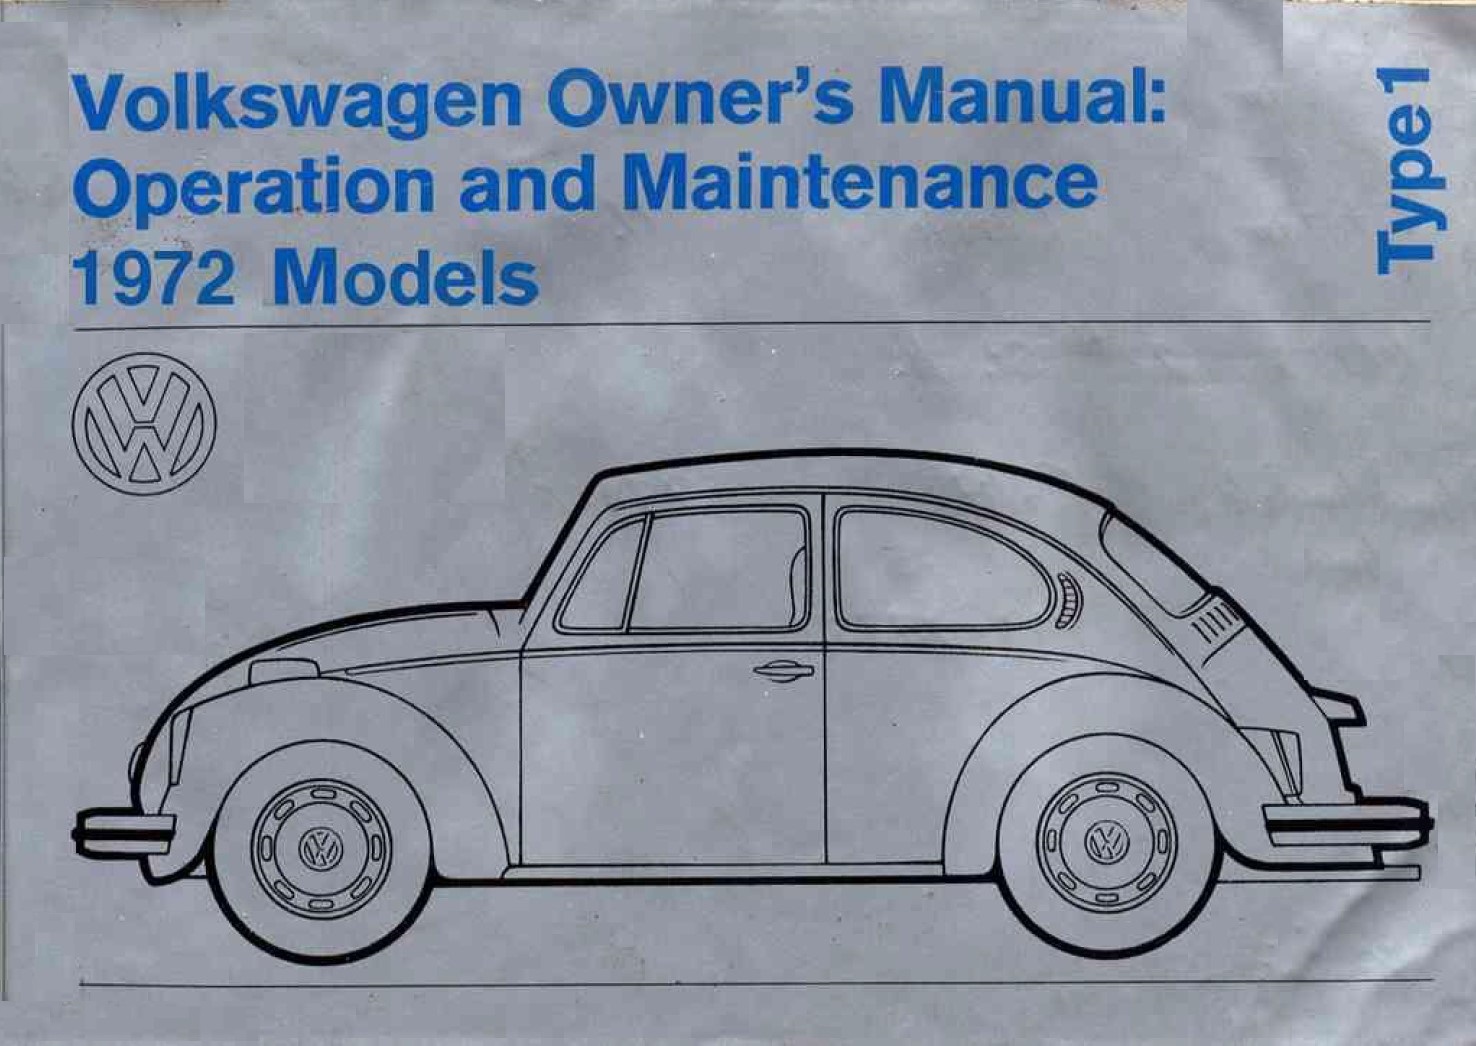 1972 Owner's Manual